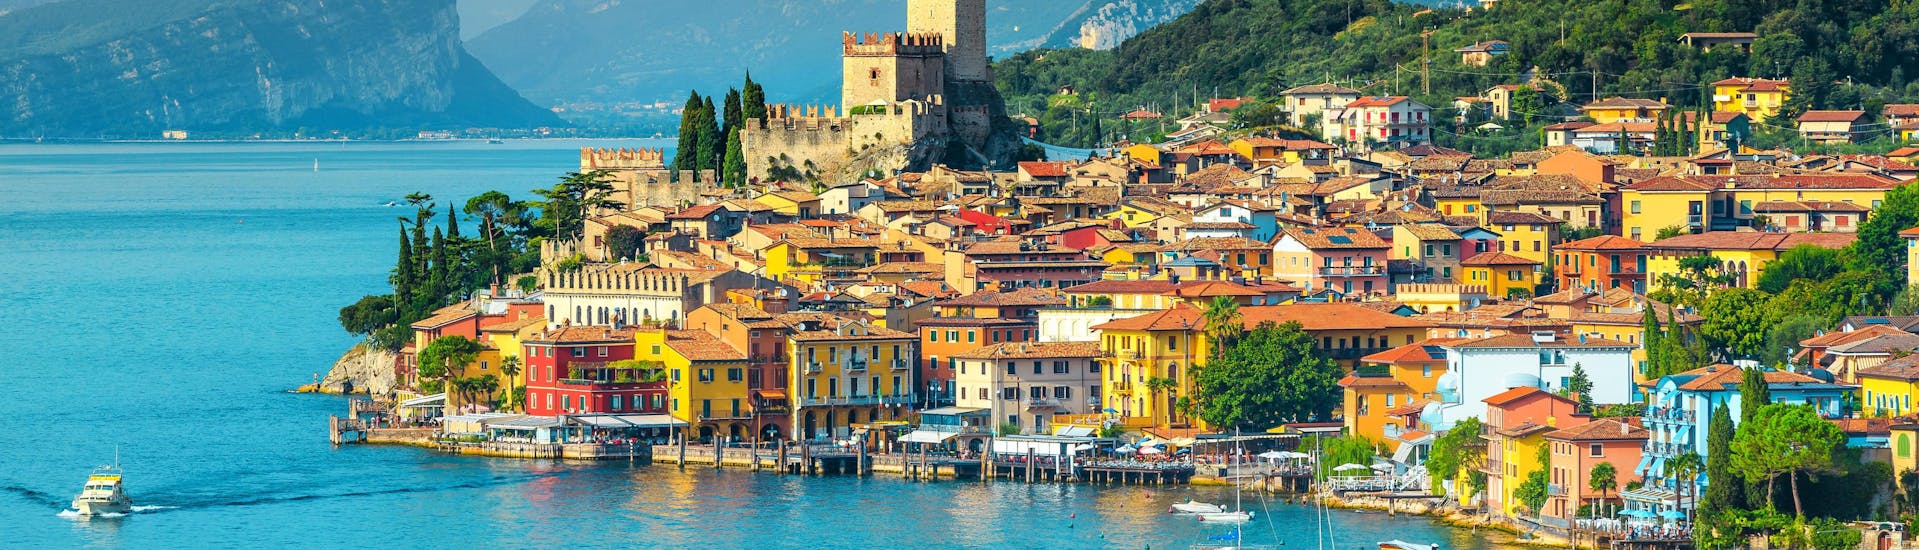 La città di Malcesine sul Lago di Garda, in Italia.